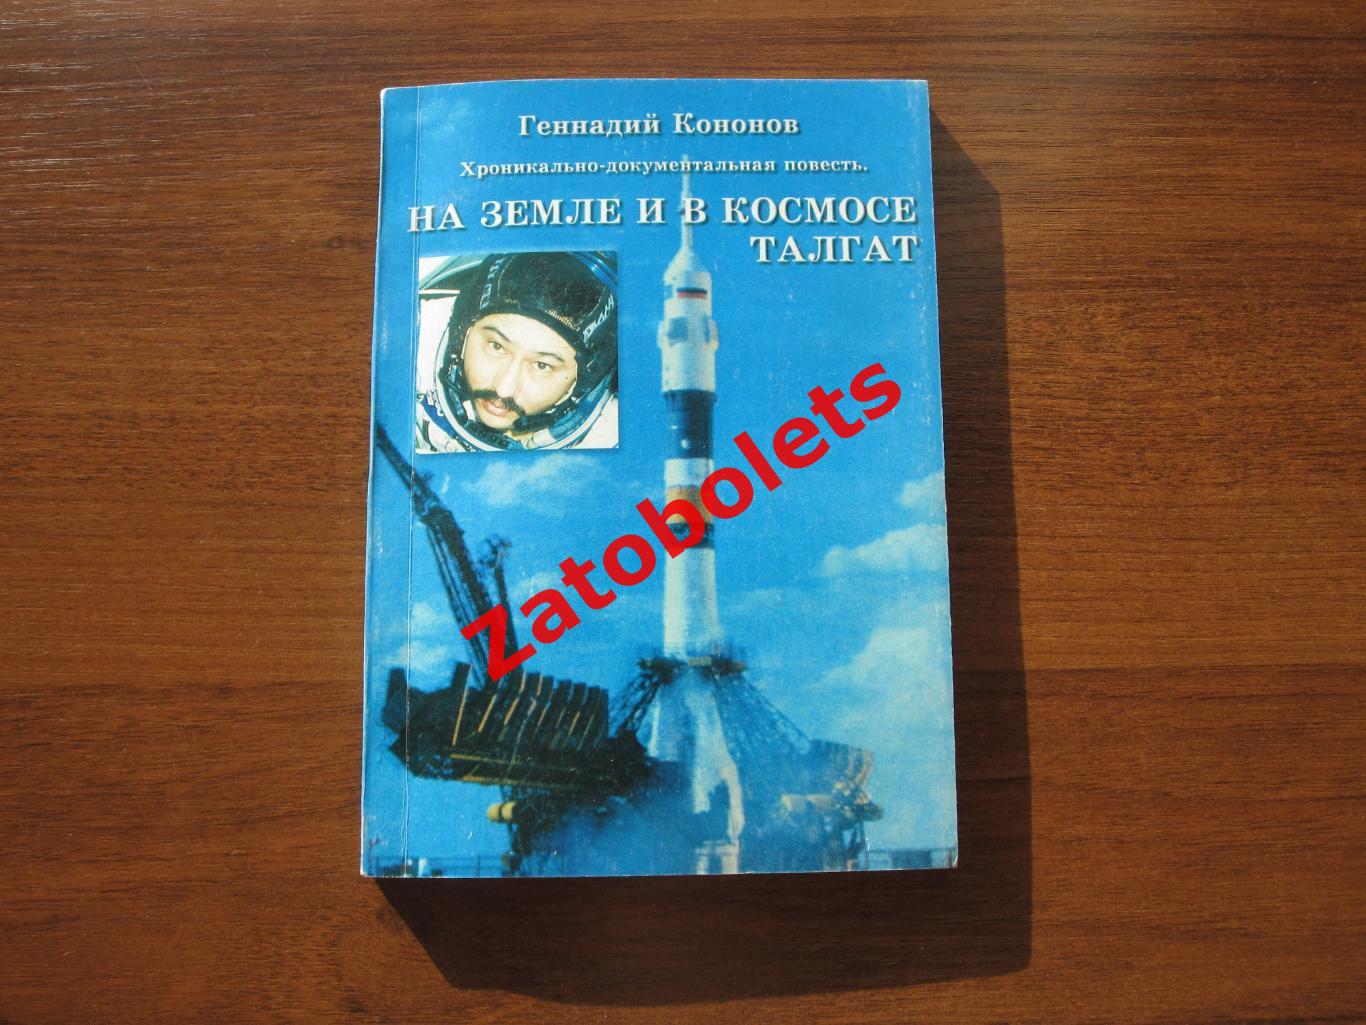 Геннадий Кононов - На земле и в космосе Талгат. Алматы Казахстан 1998